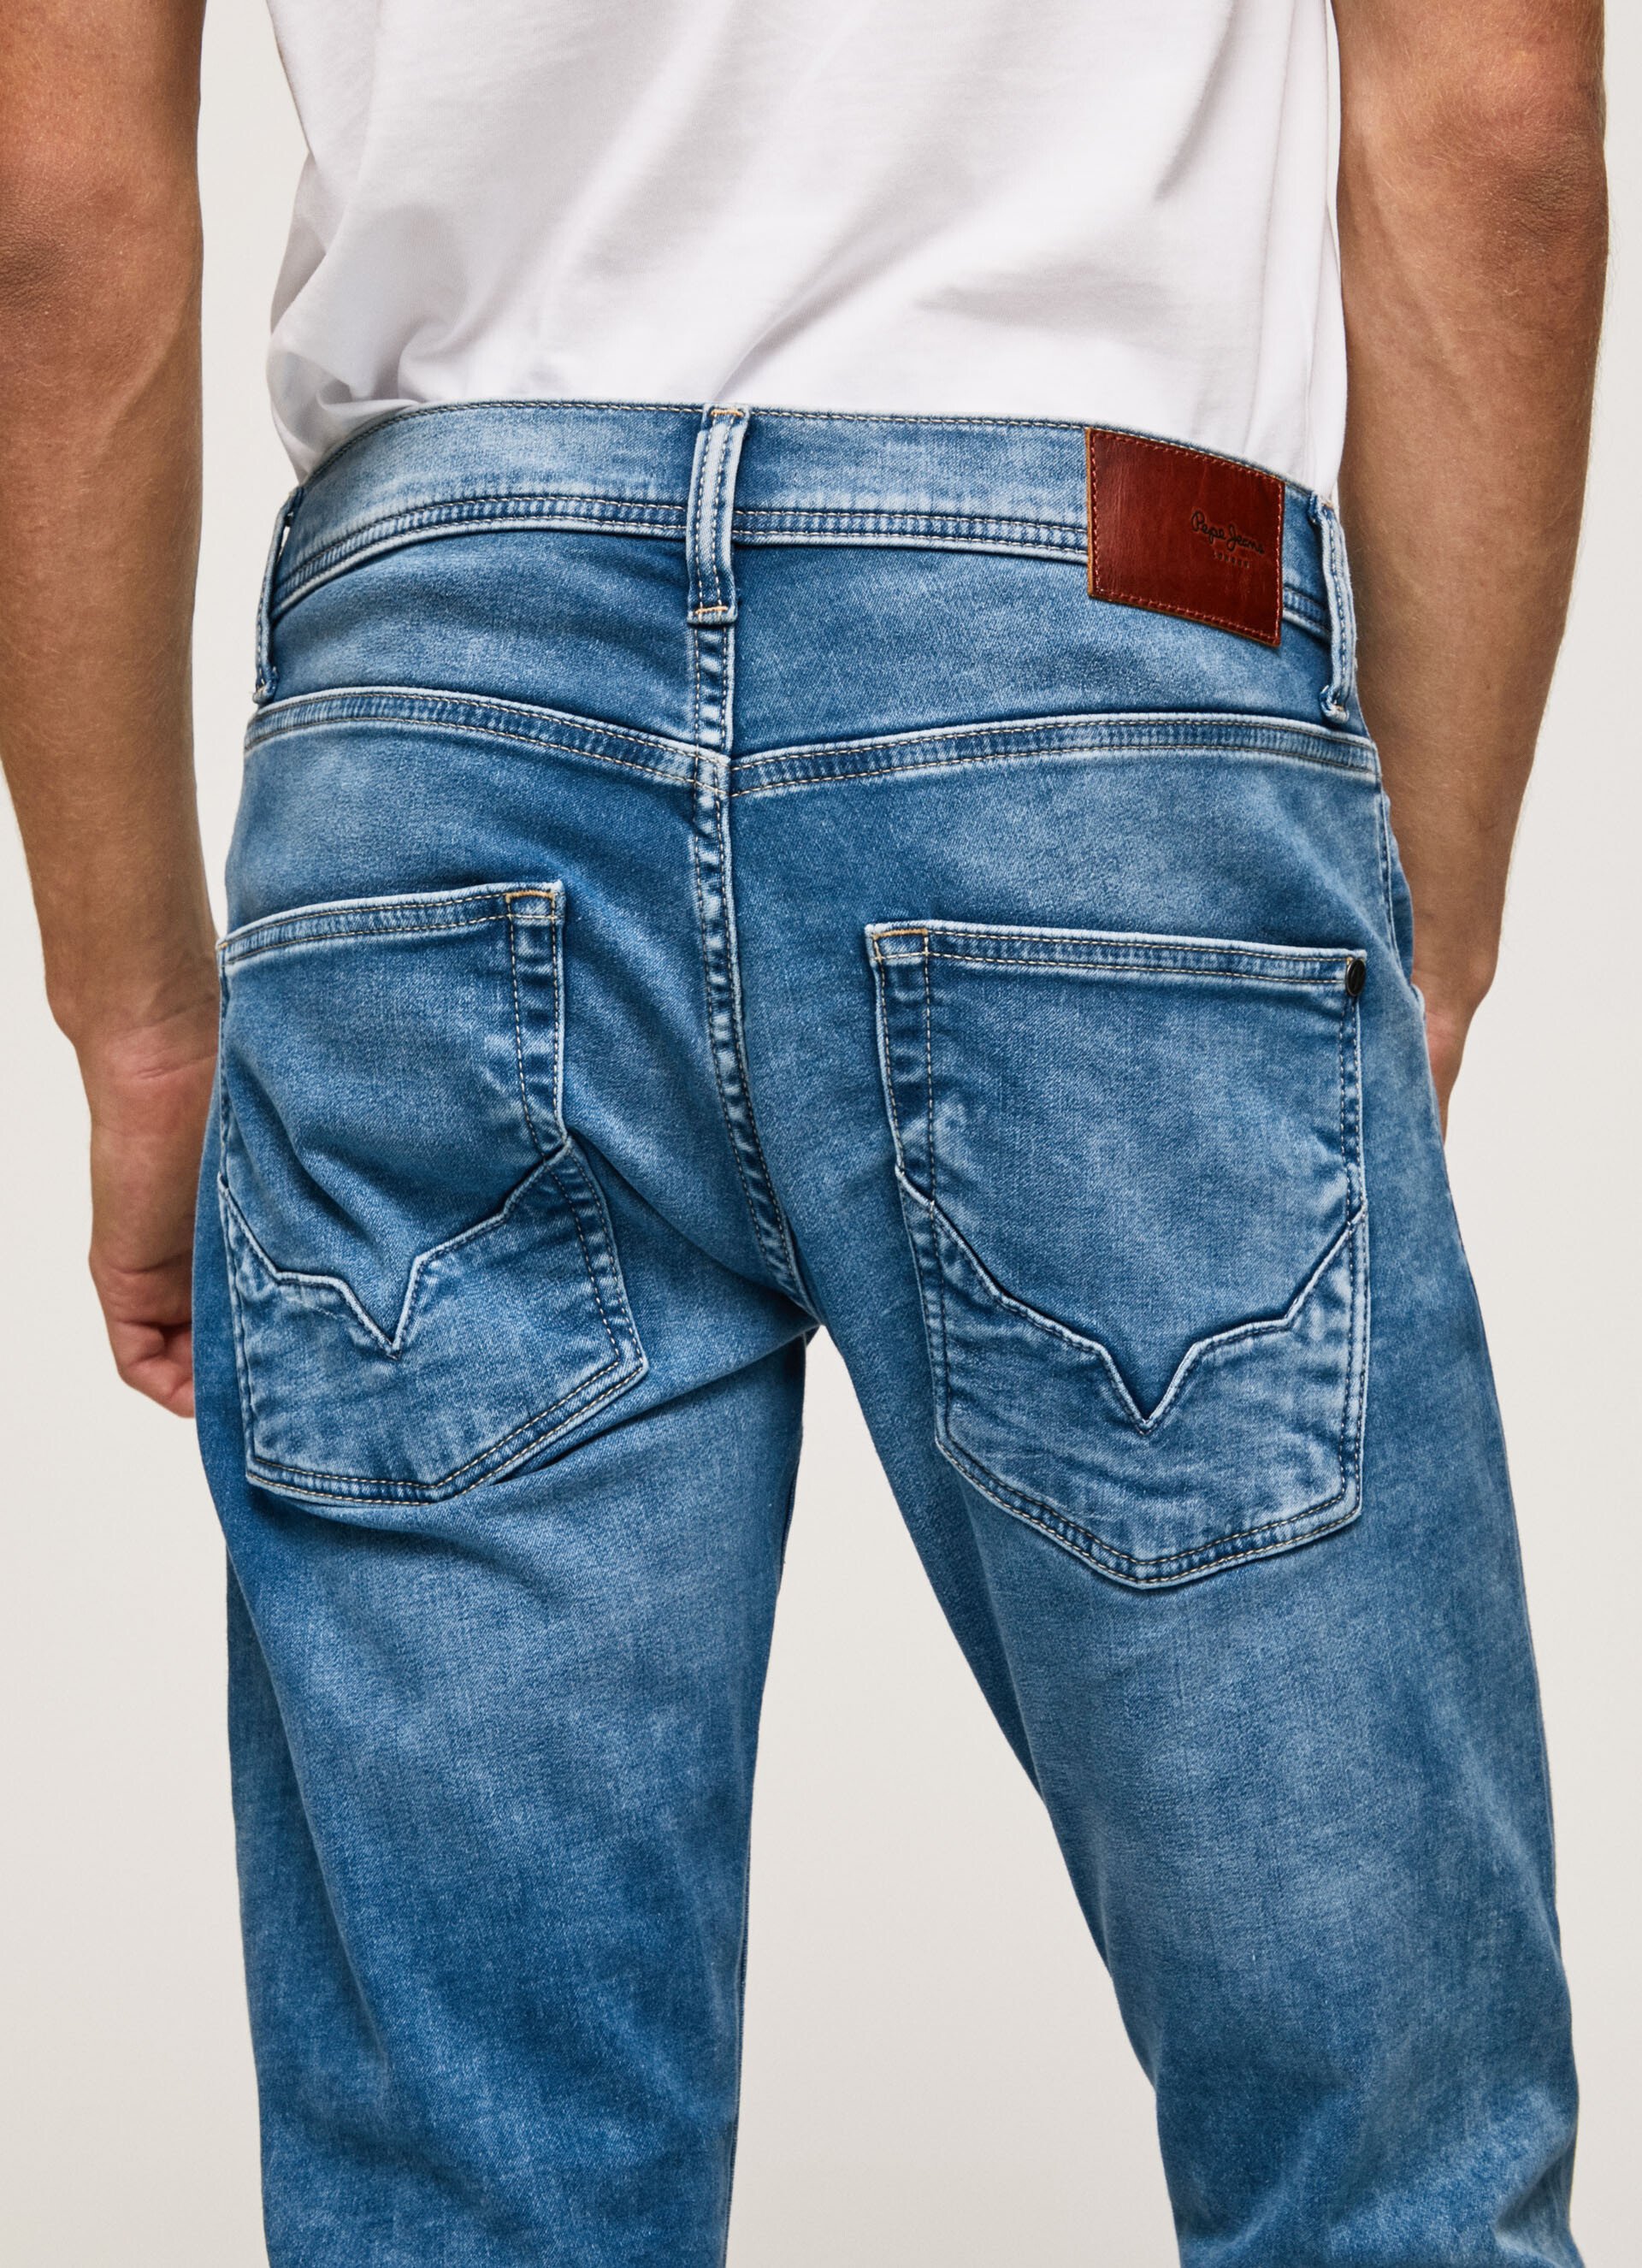 https://www.korner.es/uploads/media/images/vaquero-fit-regular-hombre-pepe-jeans-track-pm206328hp64-000-14.jpg